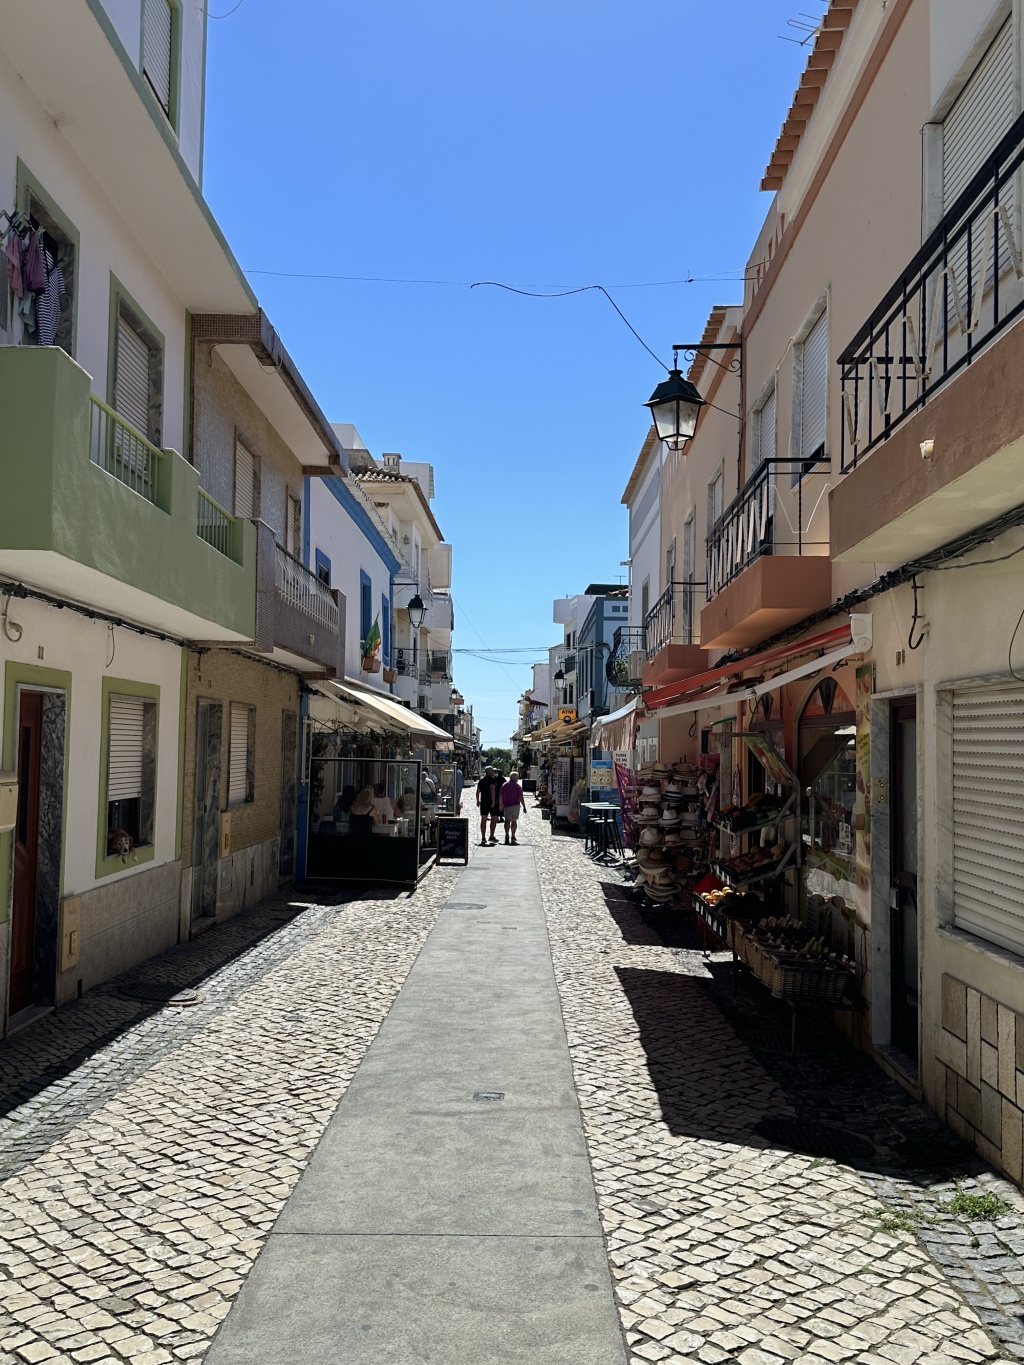 Travel:- Weekend Getaways – The Algarve